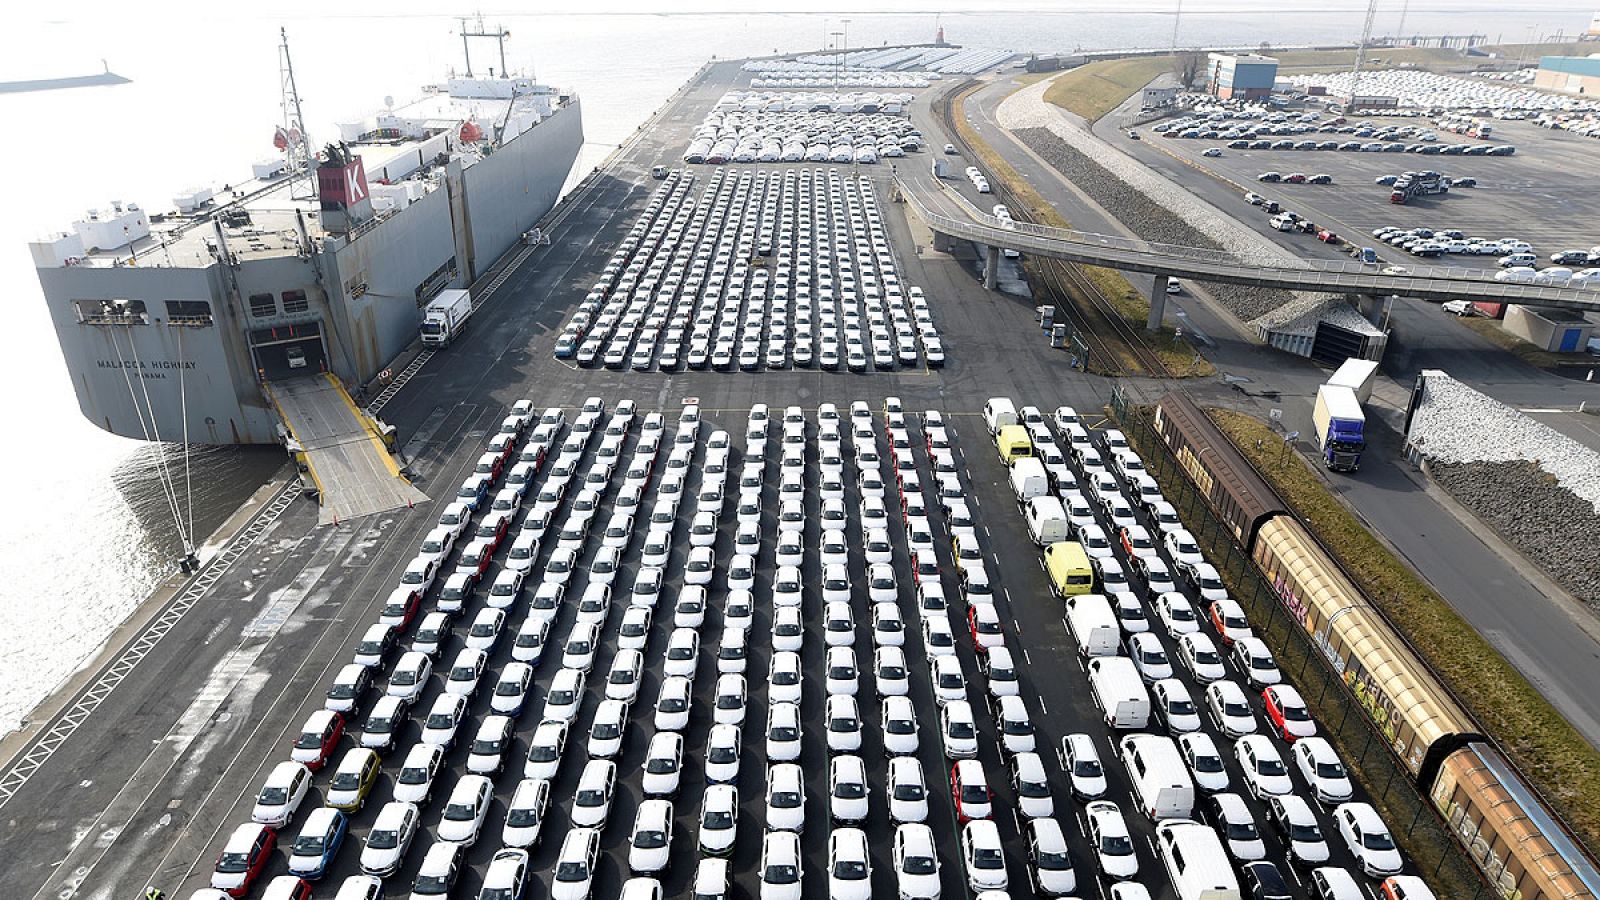 Coches la marca Volkswagen listos para ser embarcados en el puerto de Emden.